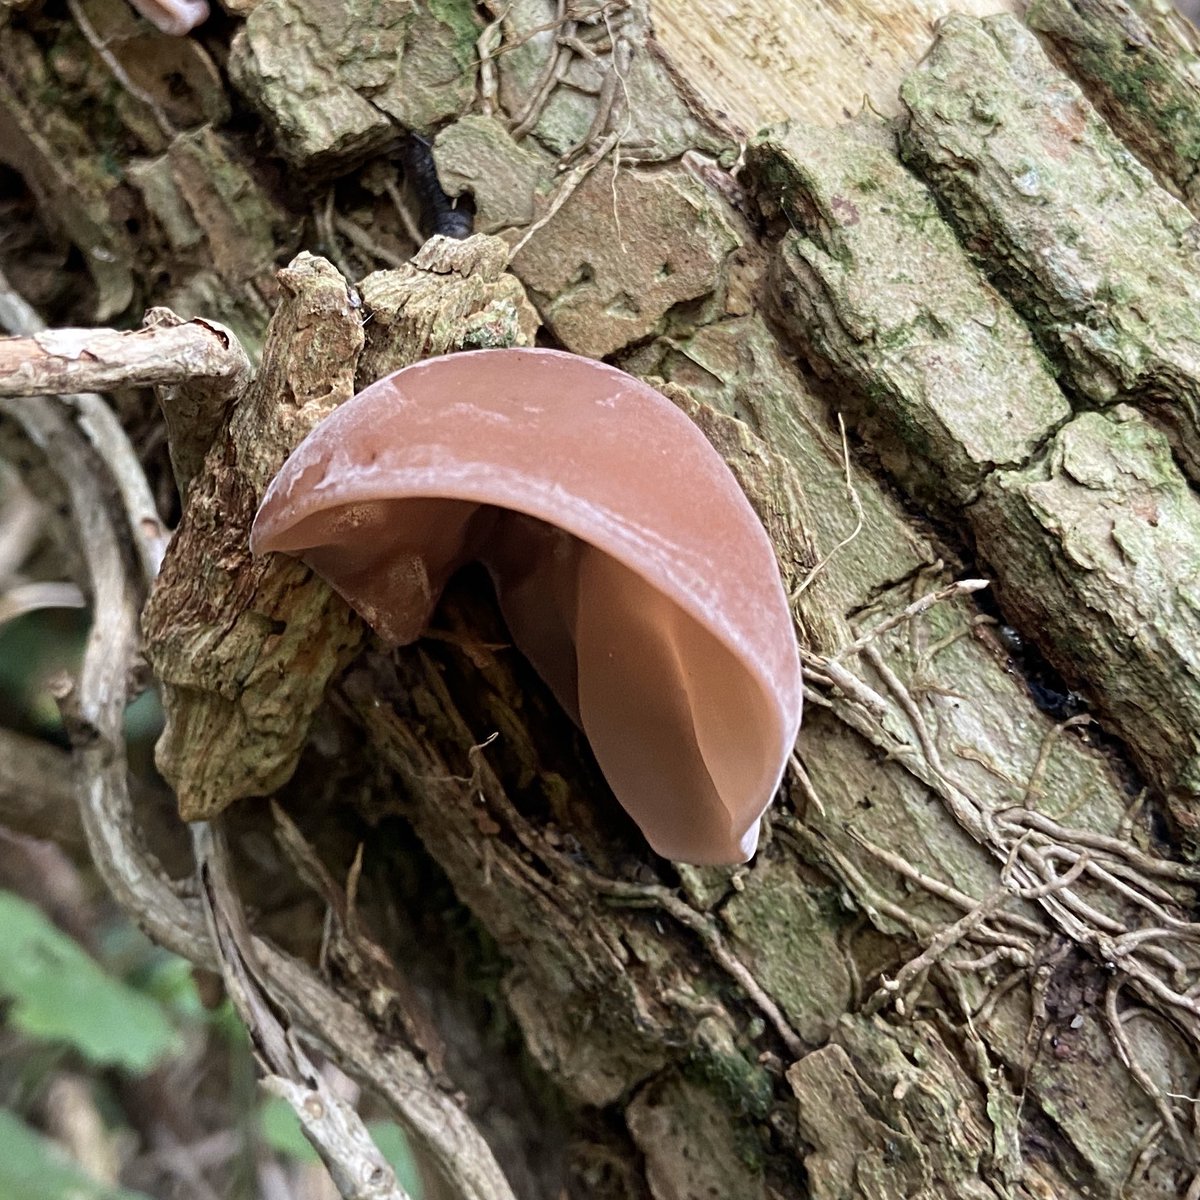 Auricularia-auricula judae - Wood Ear #fungi #mushrooms #auriculariaauriculajudae